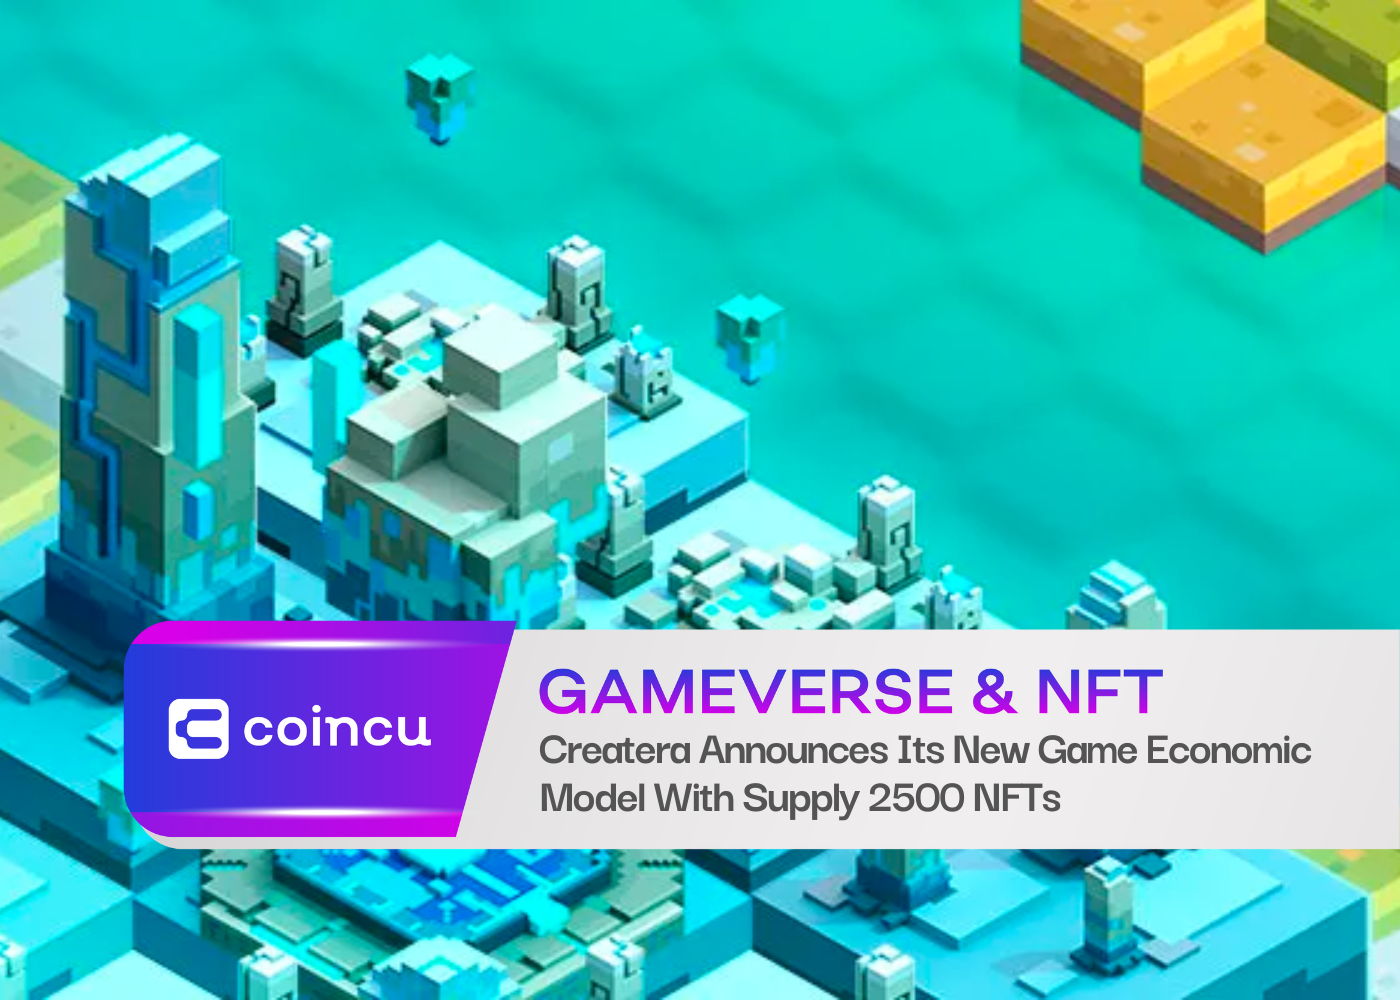 Createra, 2500 NFT 공급으로 새로운 게임 경제 모델 발표